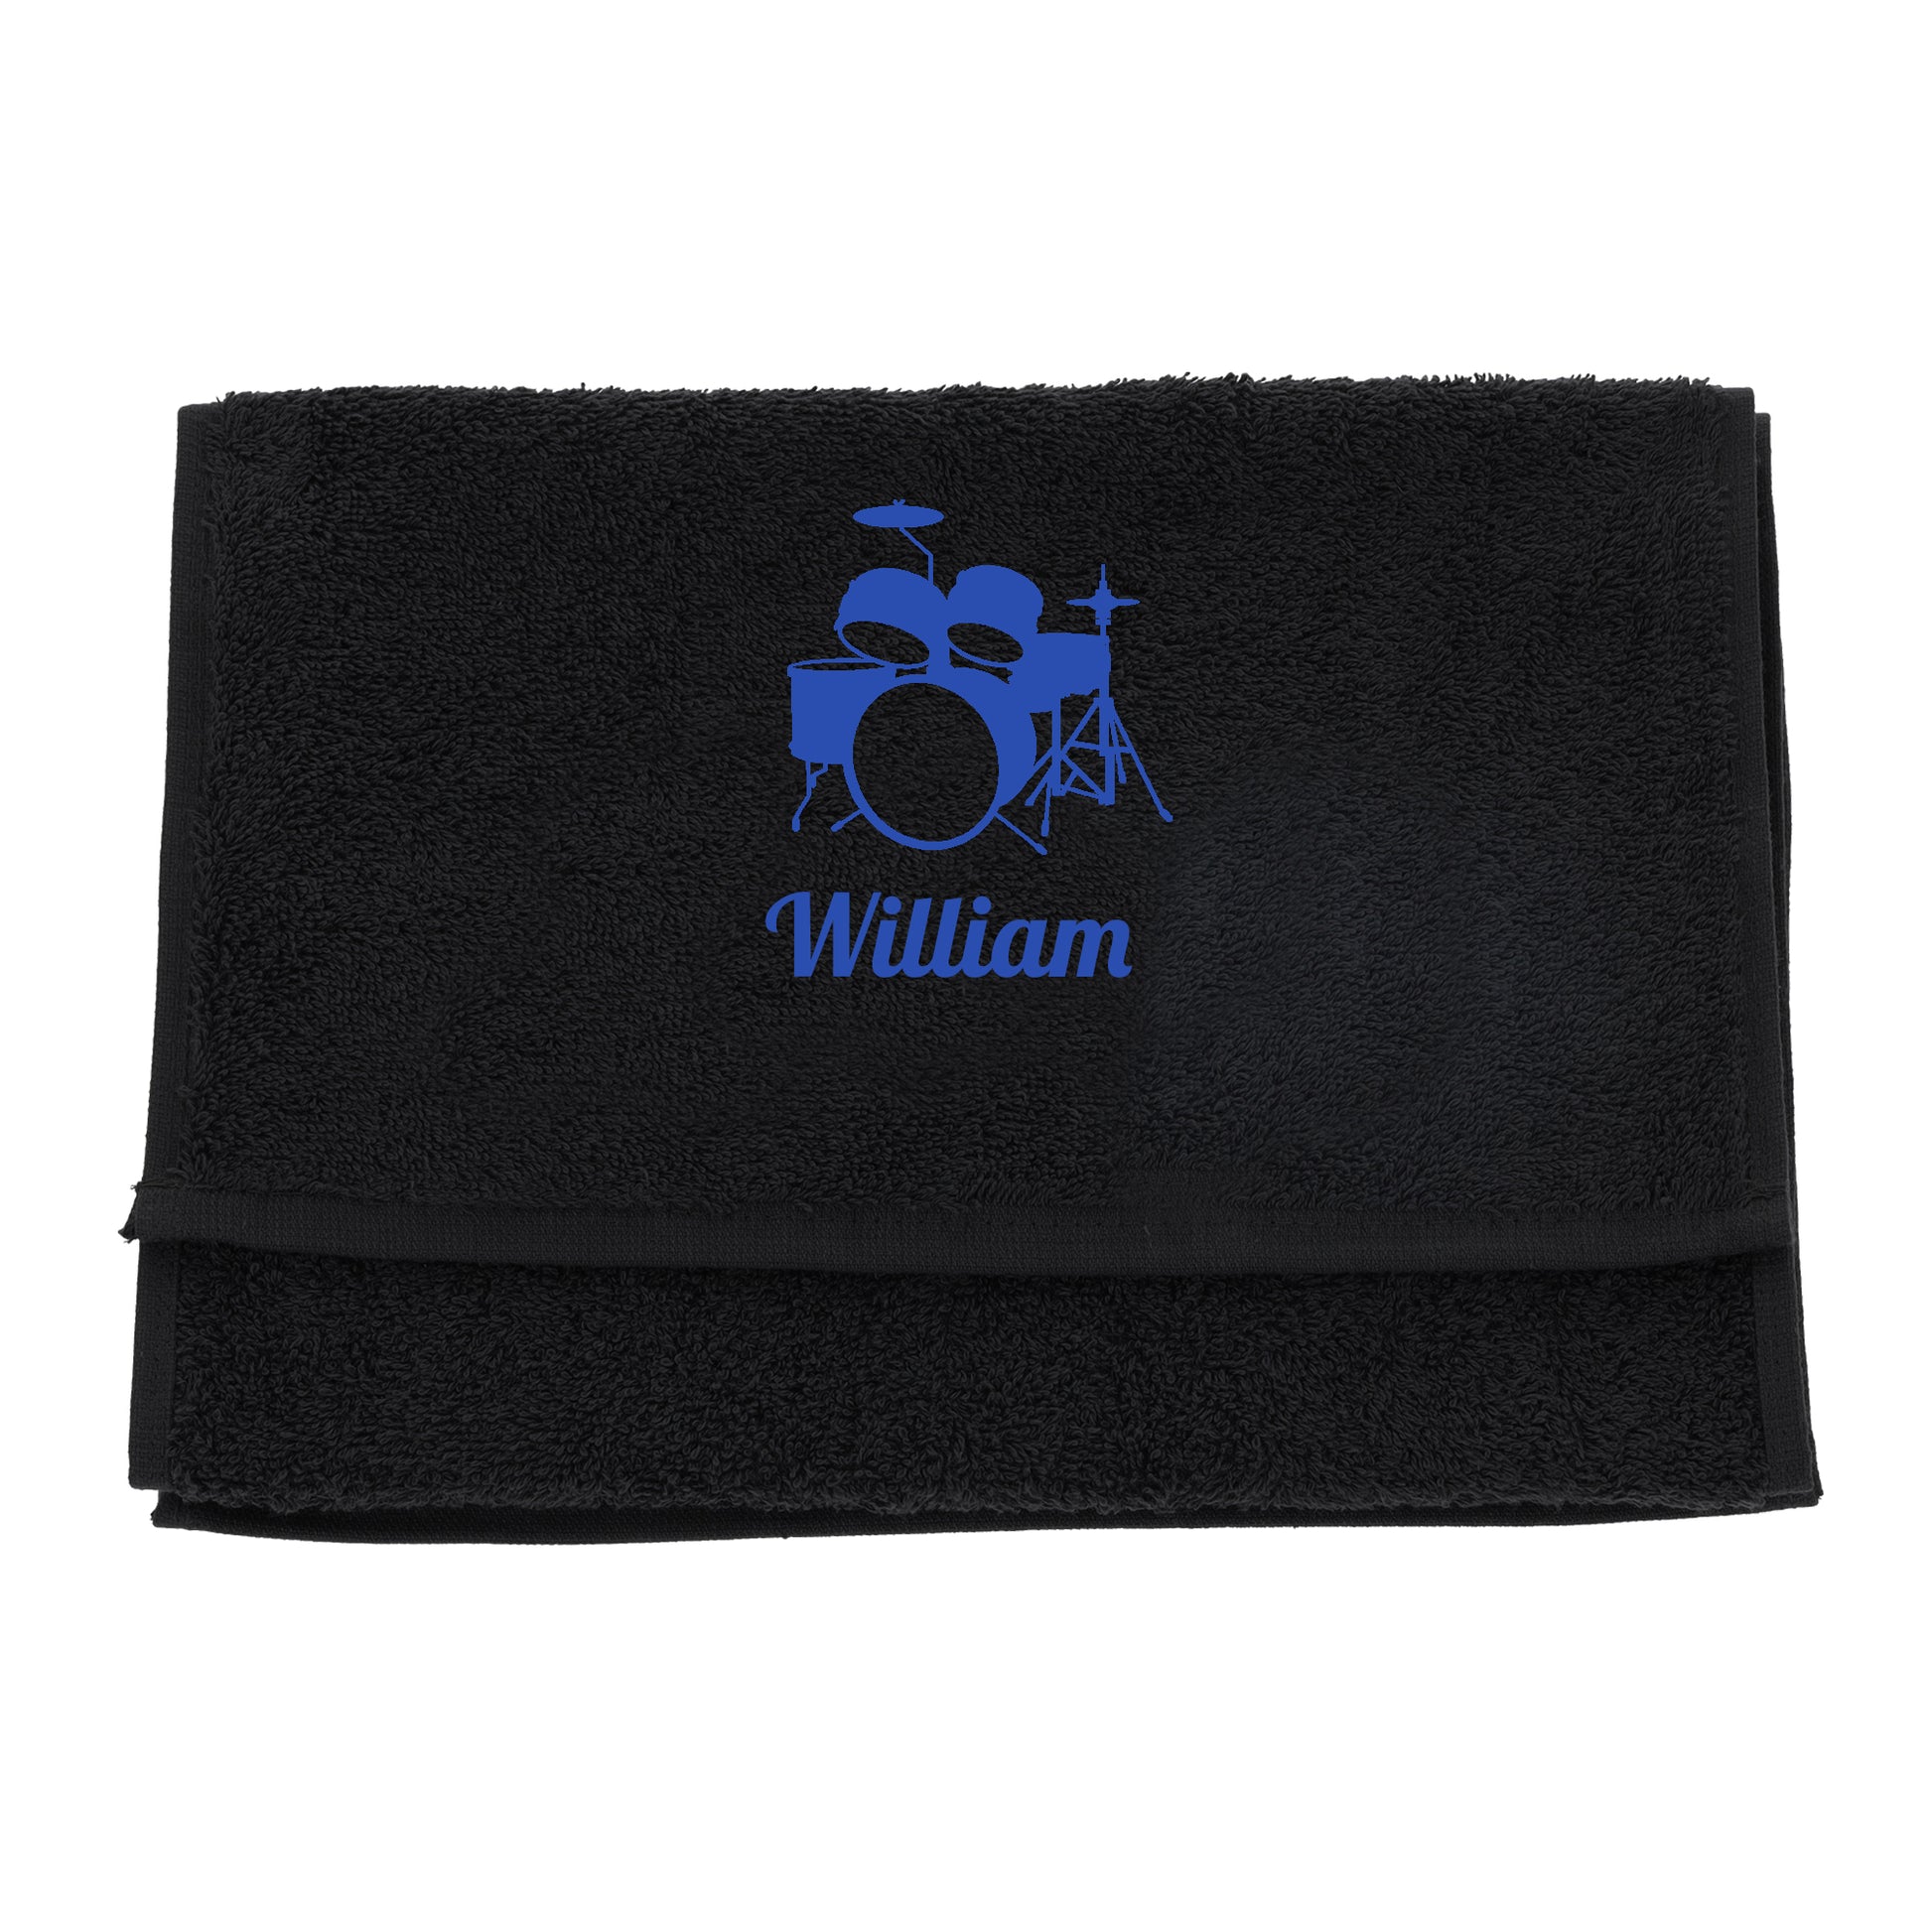 Personalised Embroidered Drummer Towel  - Always Looking Good - Black  